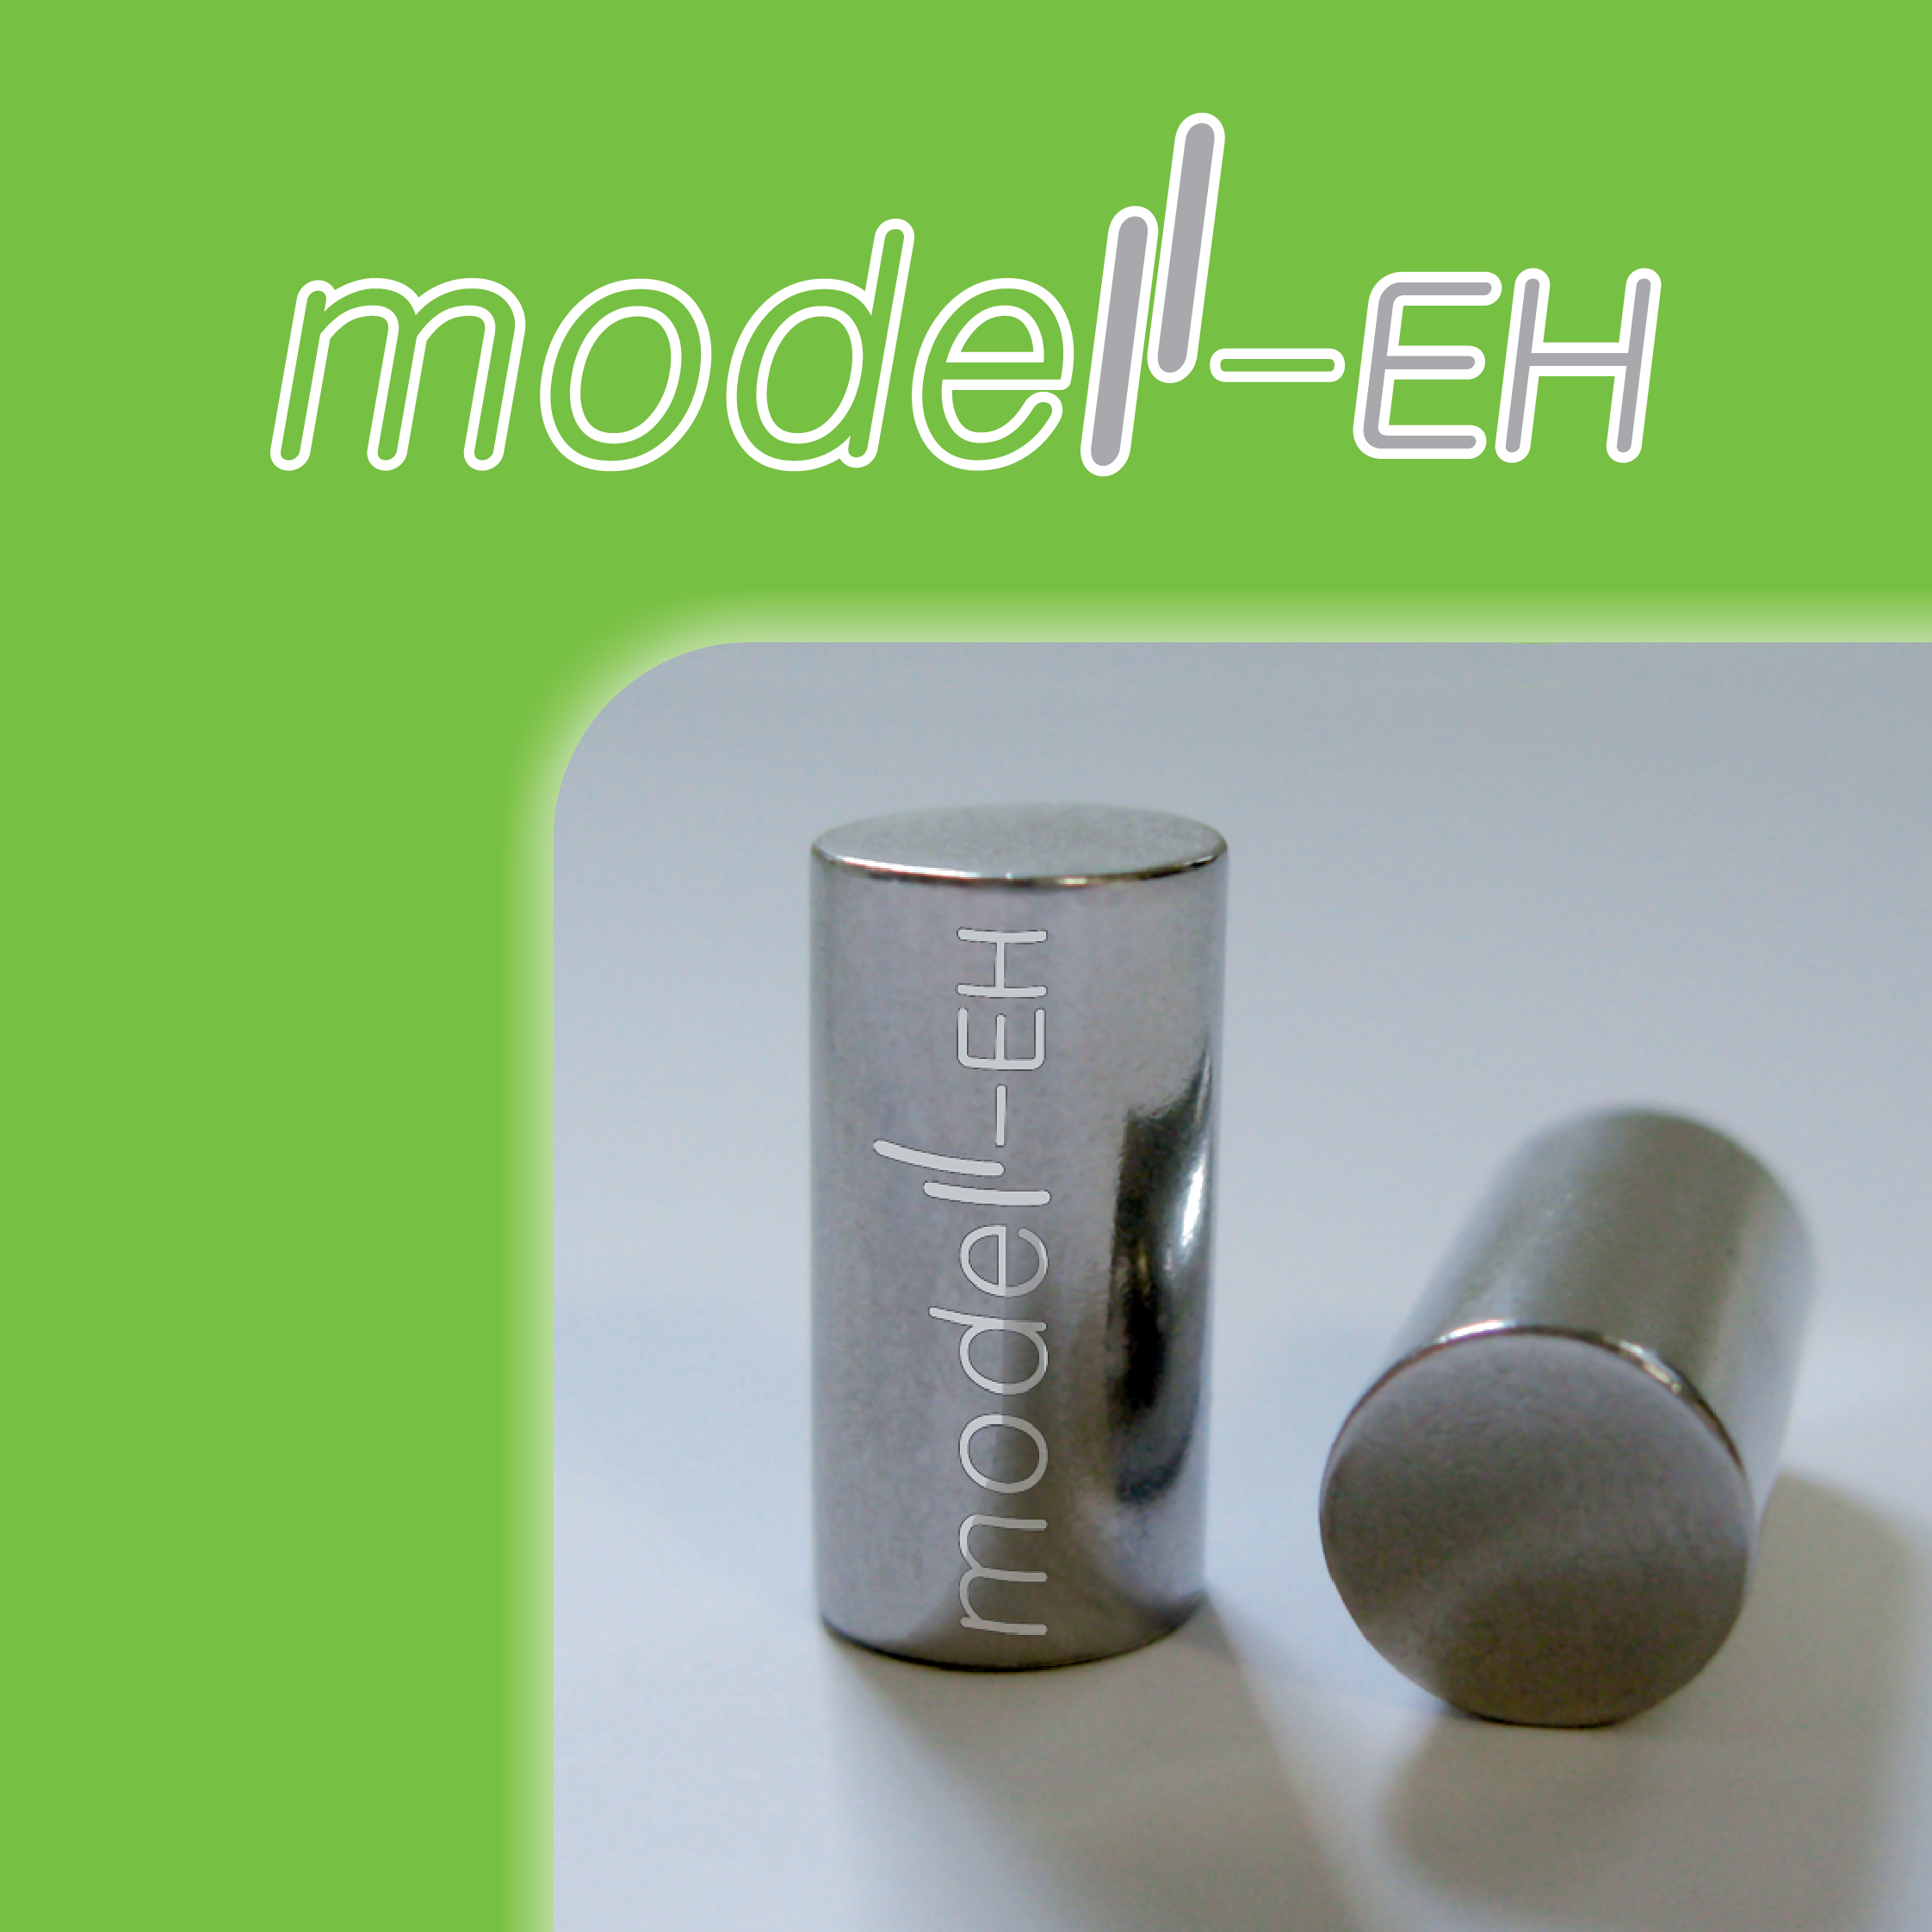 Model-EH